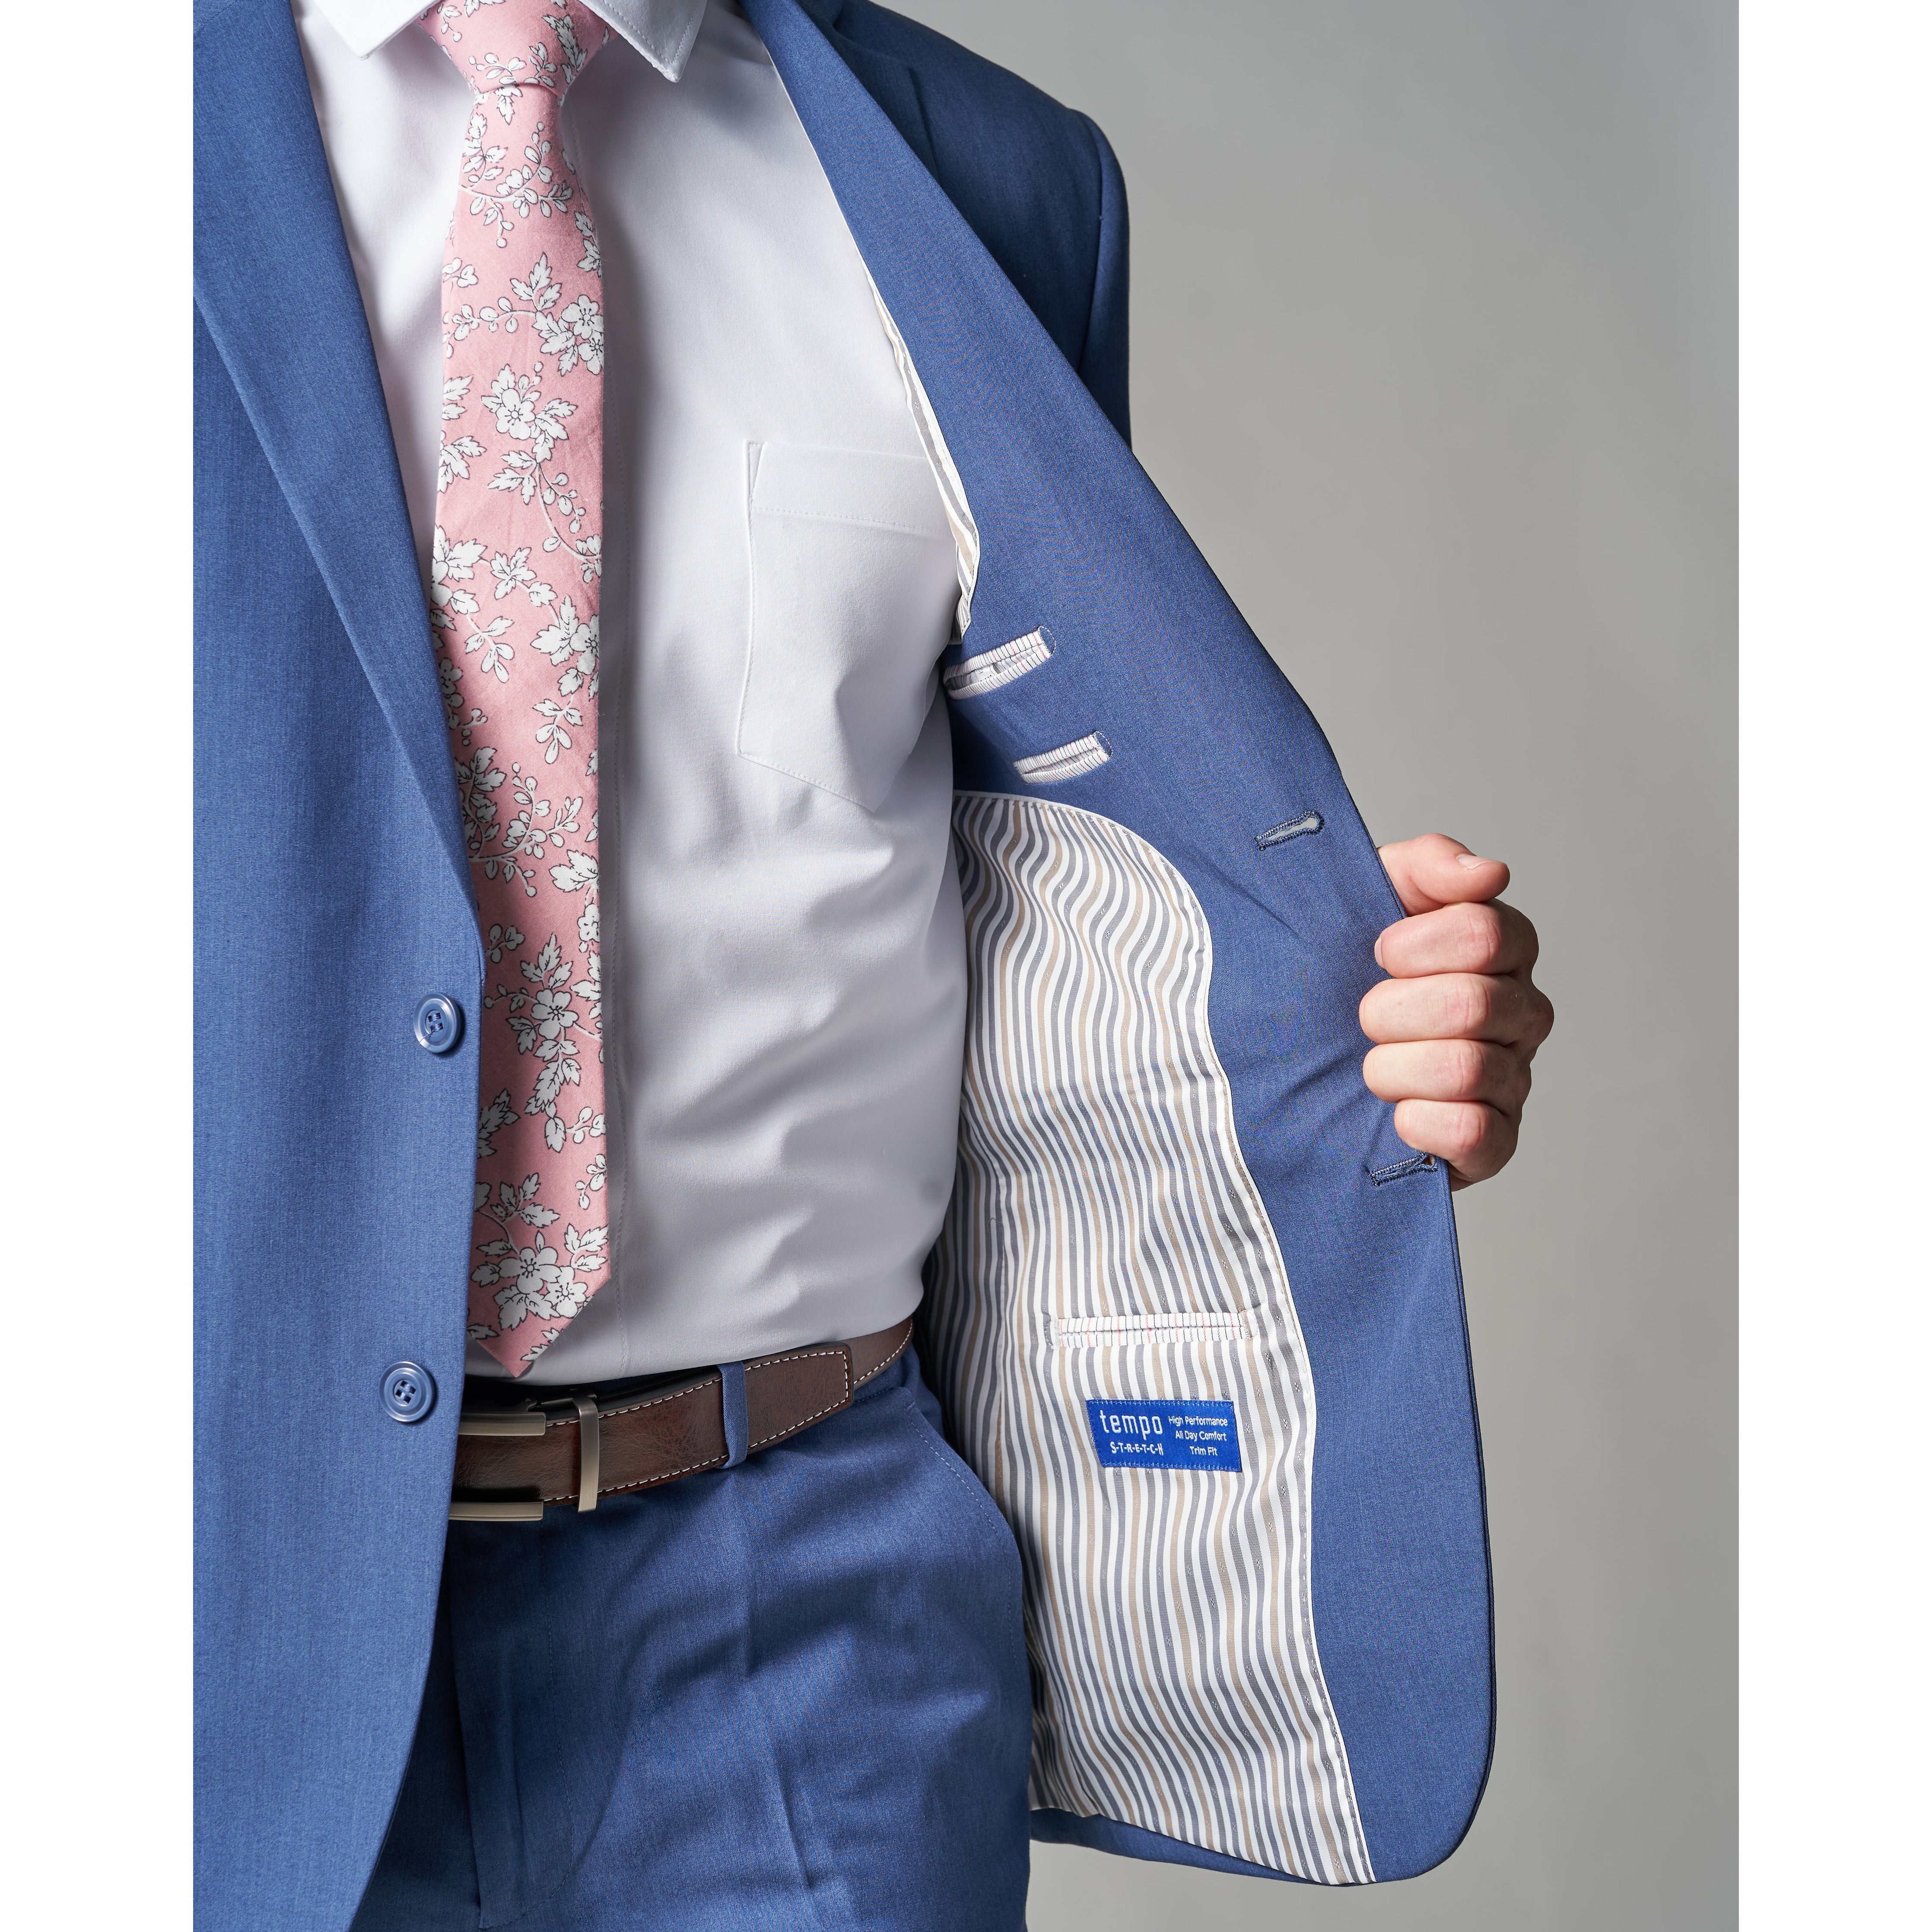 Powder Blue Tempo Stretch Slim Fit 1-Pant Suit